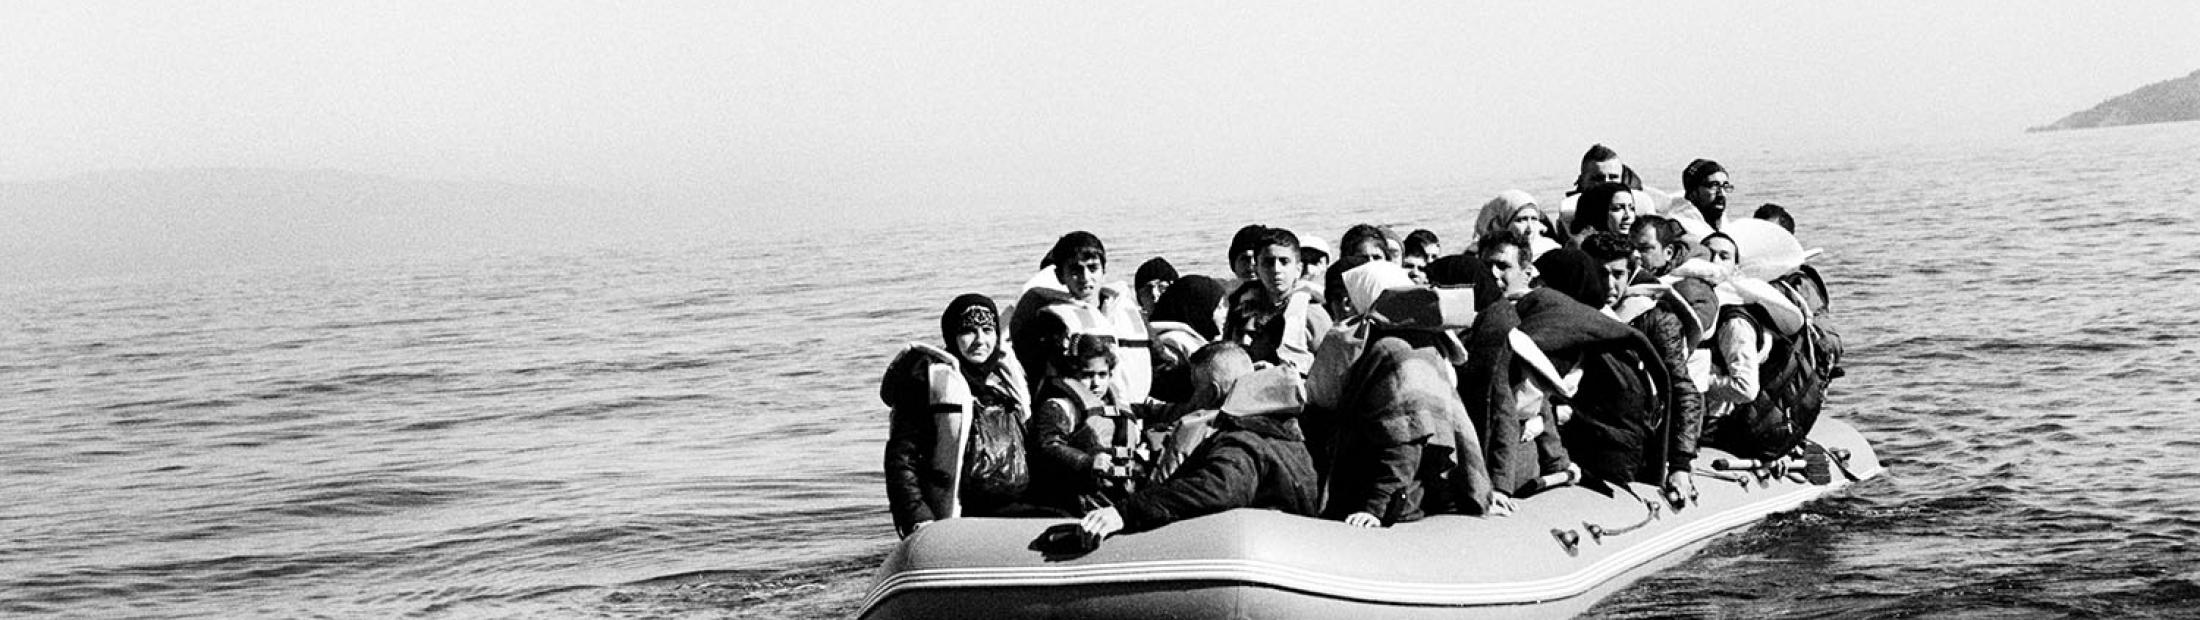 Aylan Kurdi: dos años y miles de muertos después